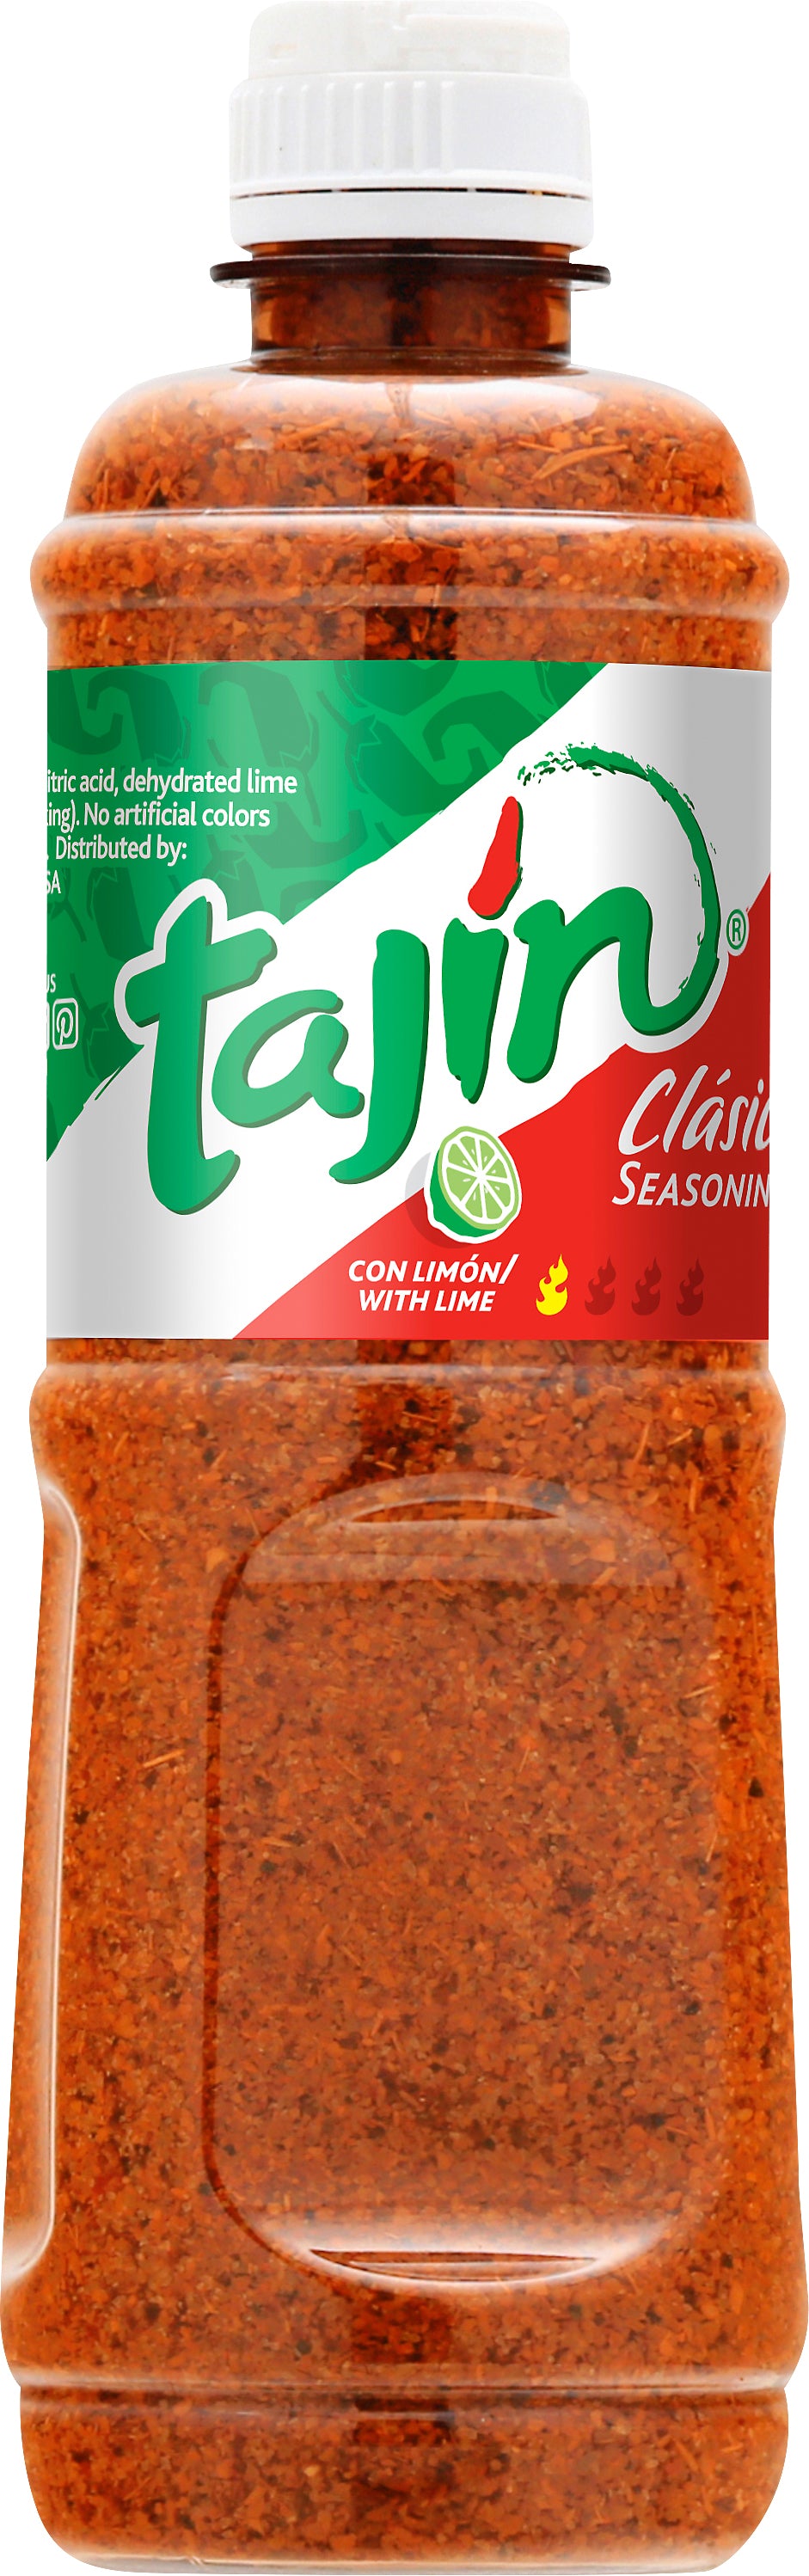 Tajin Clasico Seasoning-14 oz.-12/Case